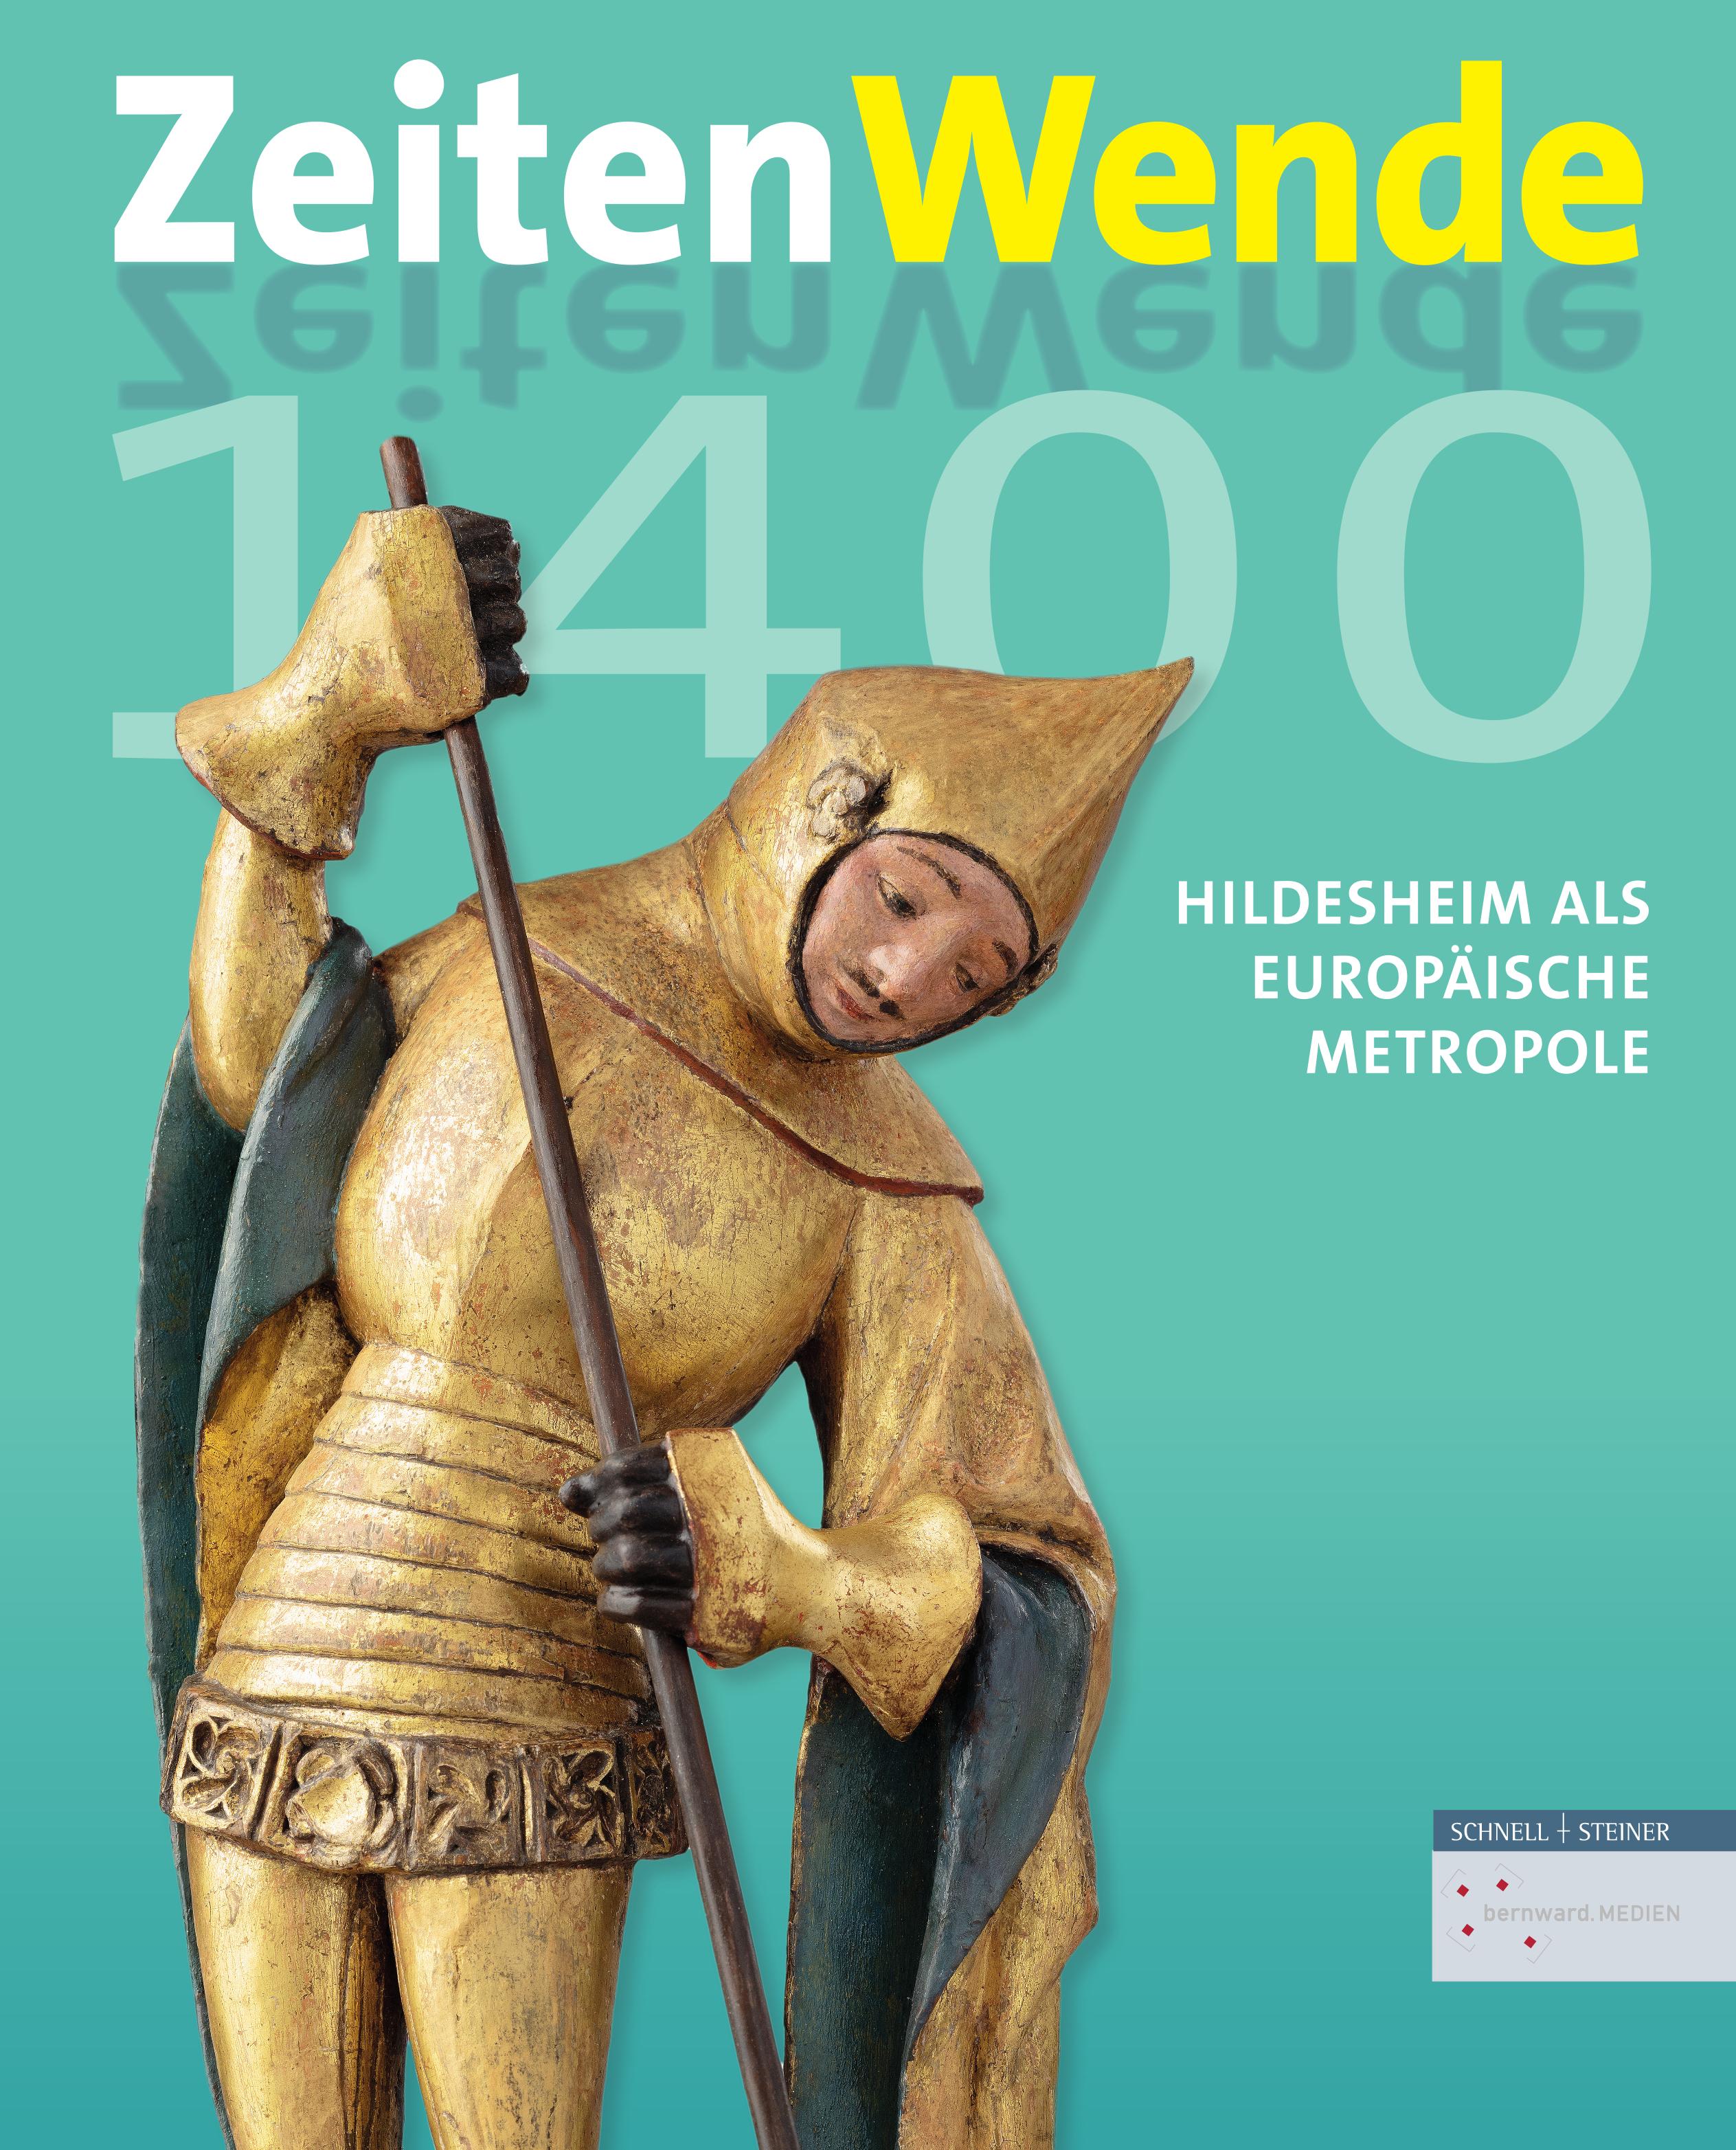 ZeitenWende 1400. Hildesheim als europäische Metropole